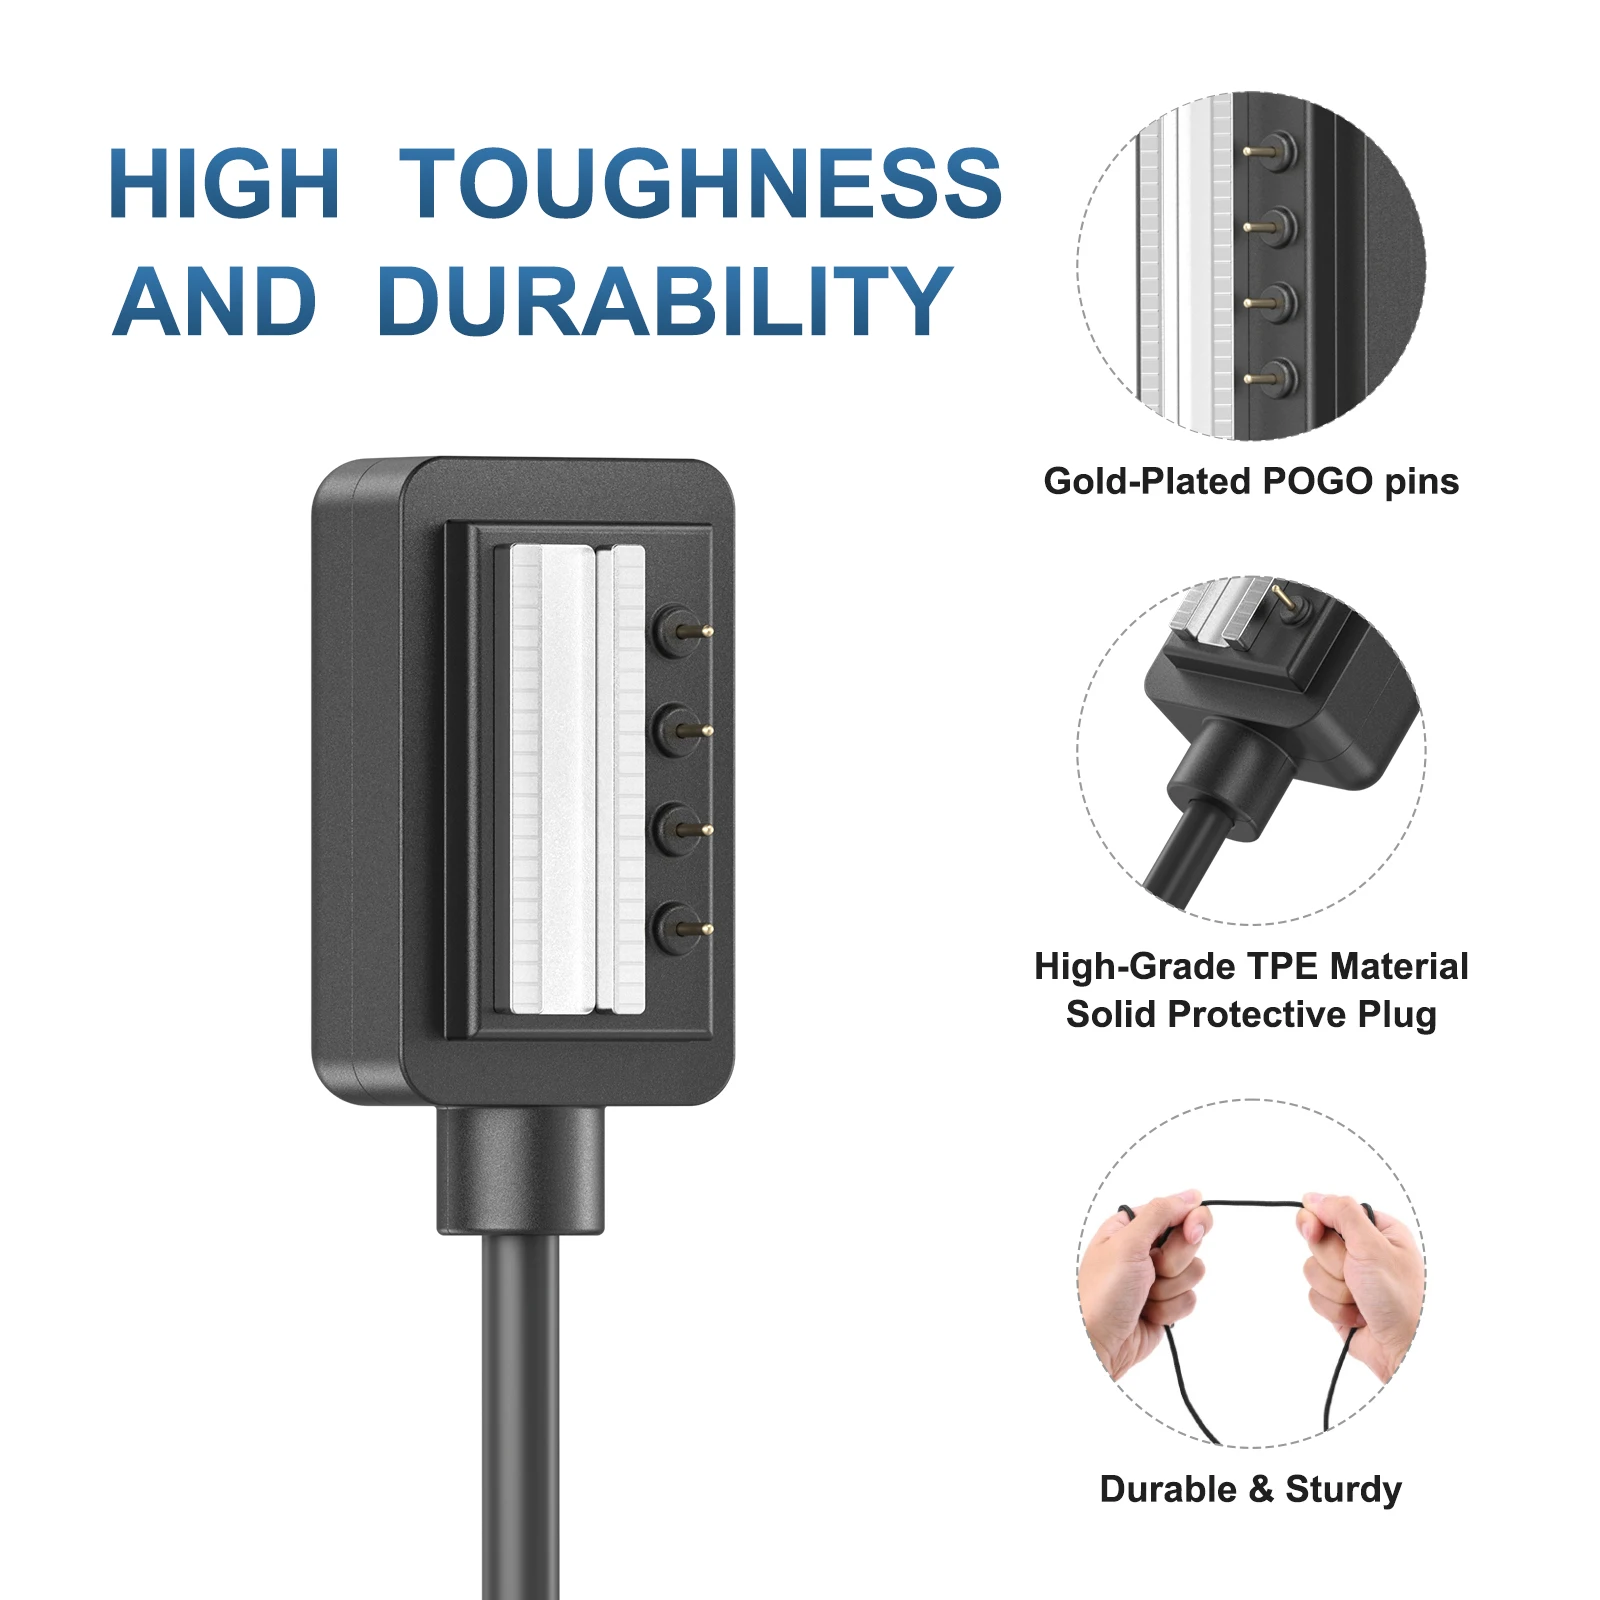 Chargeur USB pour Suunto 9/Spartan sport/EON Core/D5, câble de charge pour poignet, HR Baro/Spartan ultra